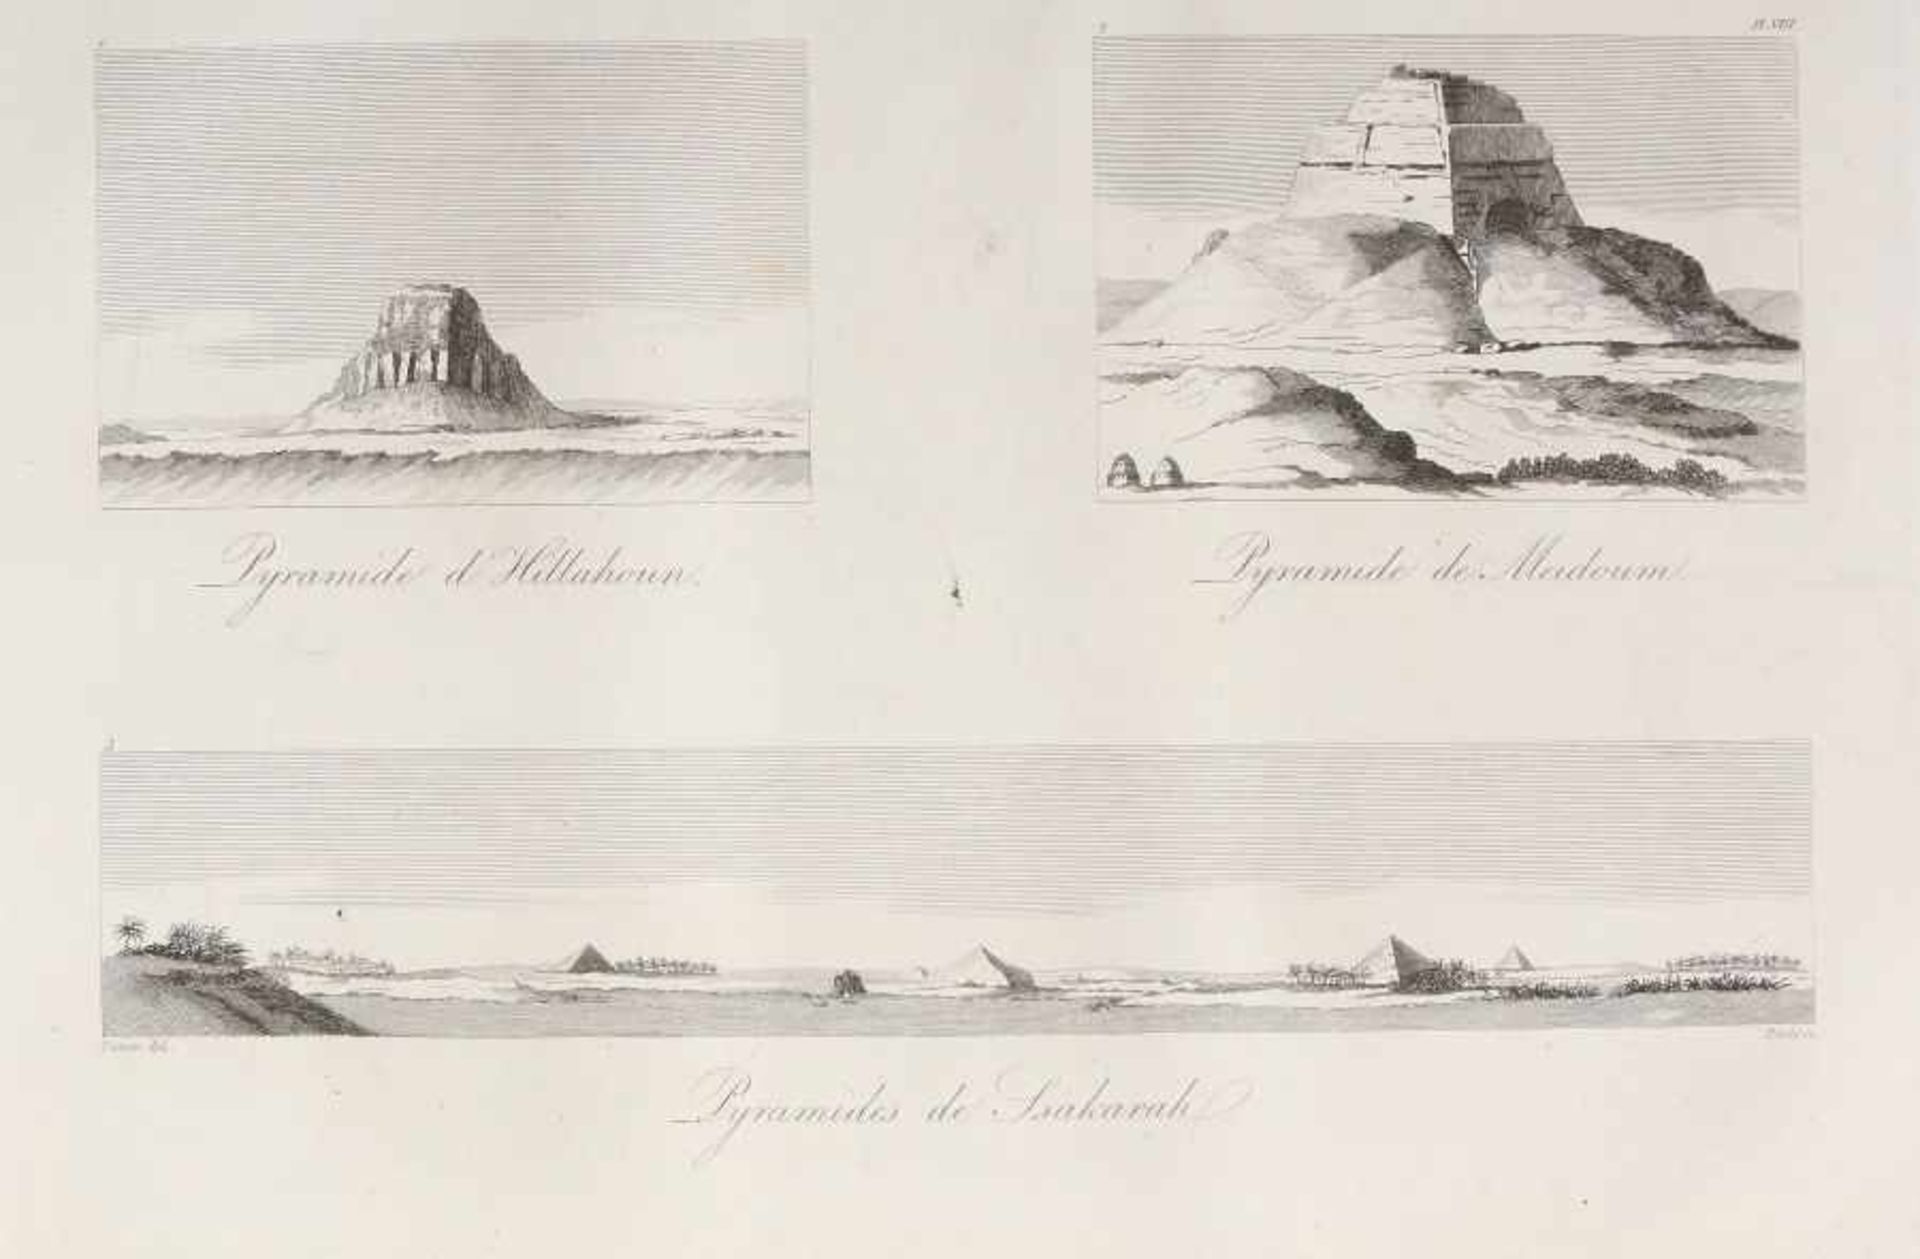 Denon, Vivant Voyages des la Basse et la Haute Egypte pendant les Campagnes de Bonaparte, Atlas, mit - Image 5 of 7